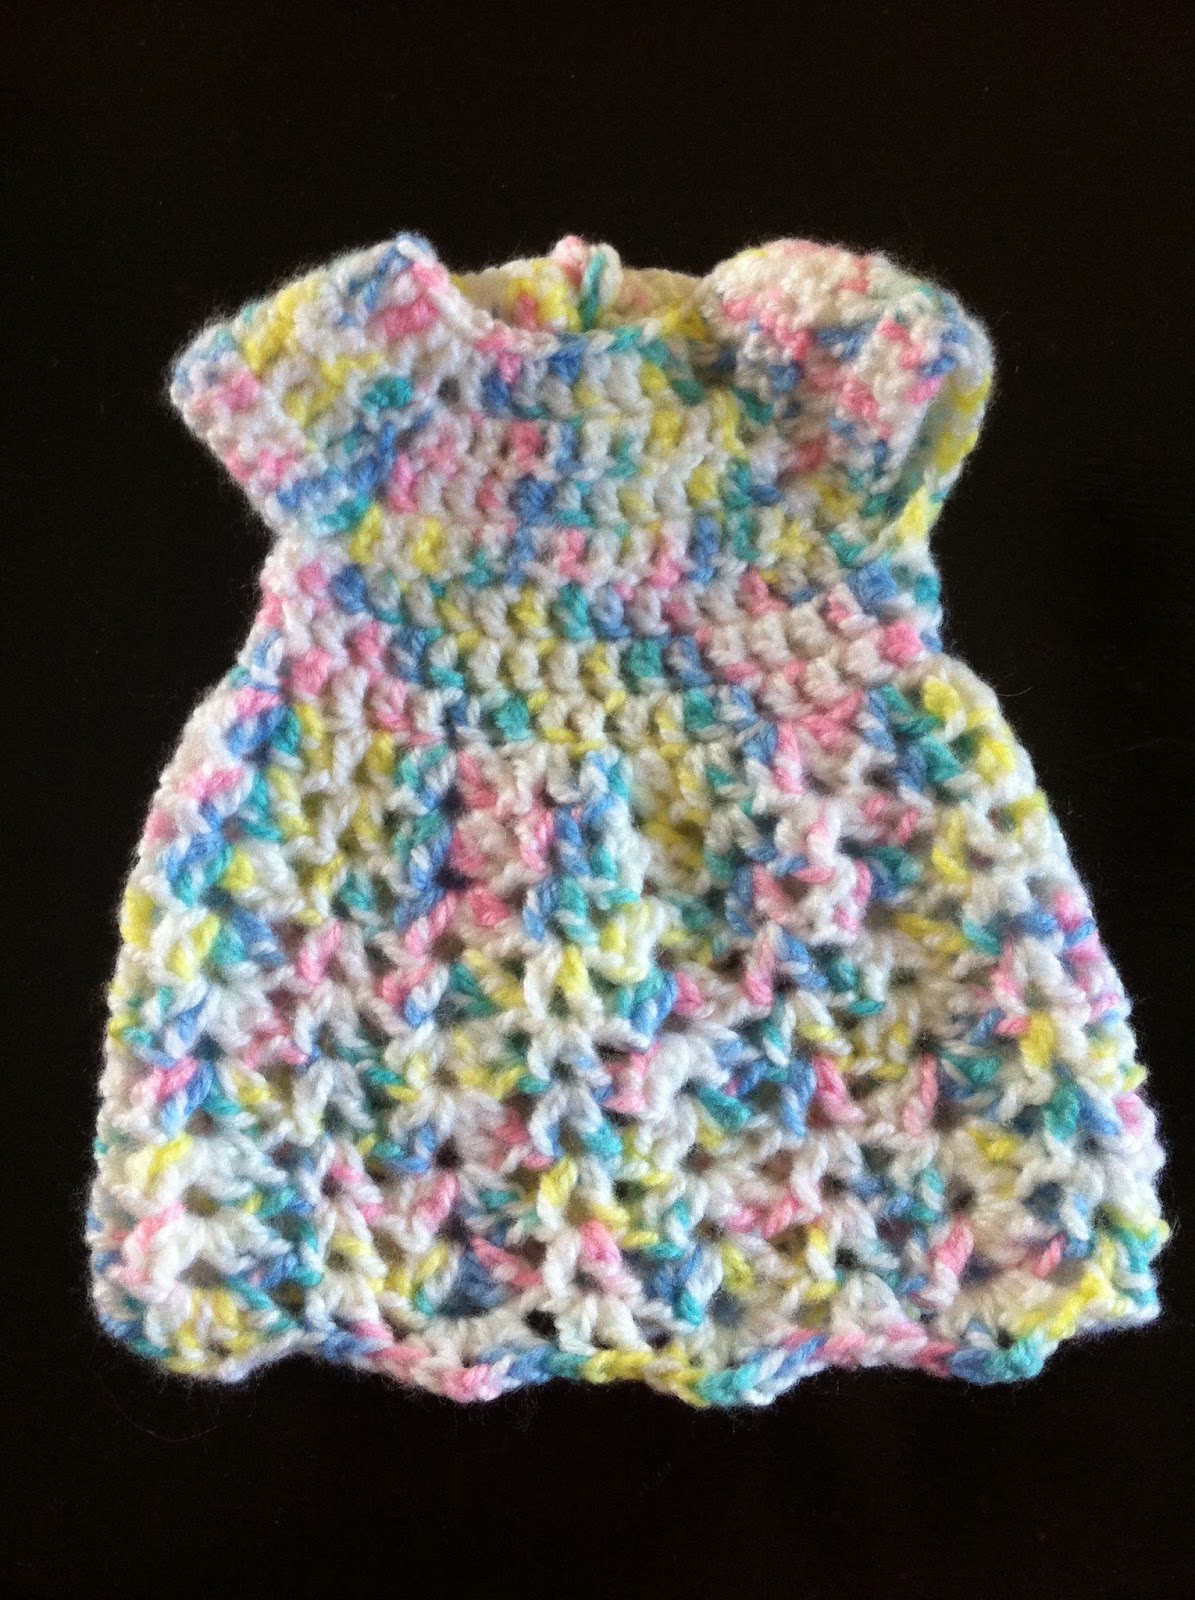 Not My Nana's Crochet!: Crochet Preemie Dress - Free Pattern